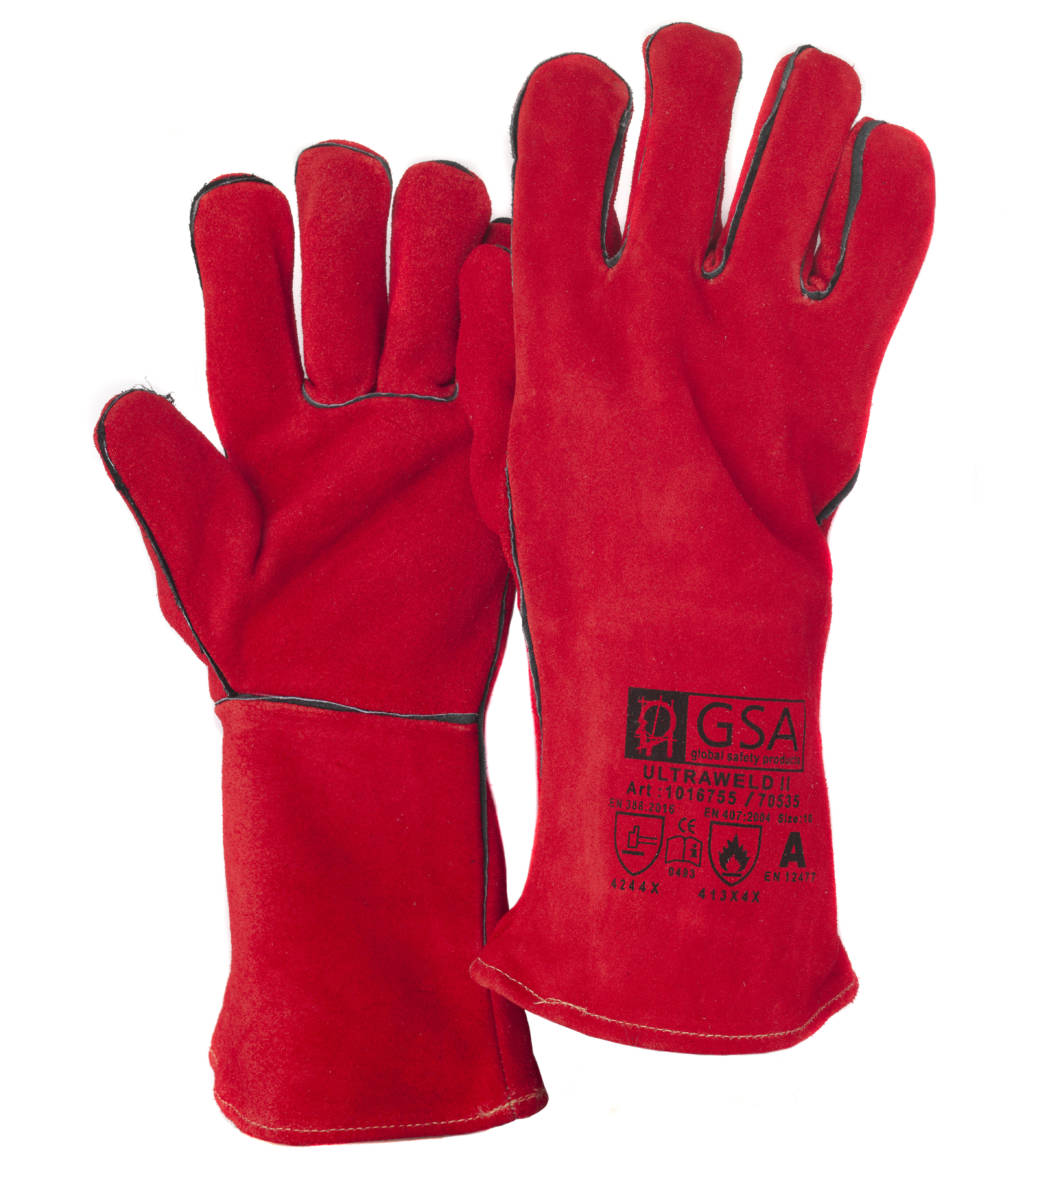 PRO SOUDEUR gants de protection pack de 10 paires